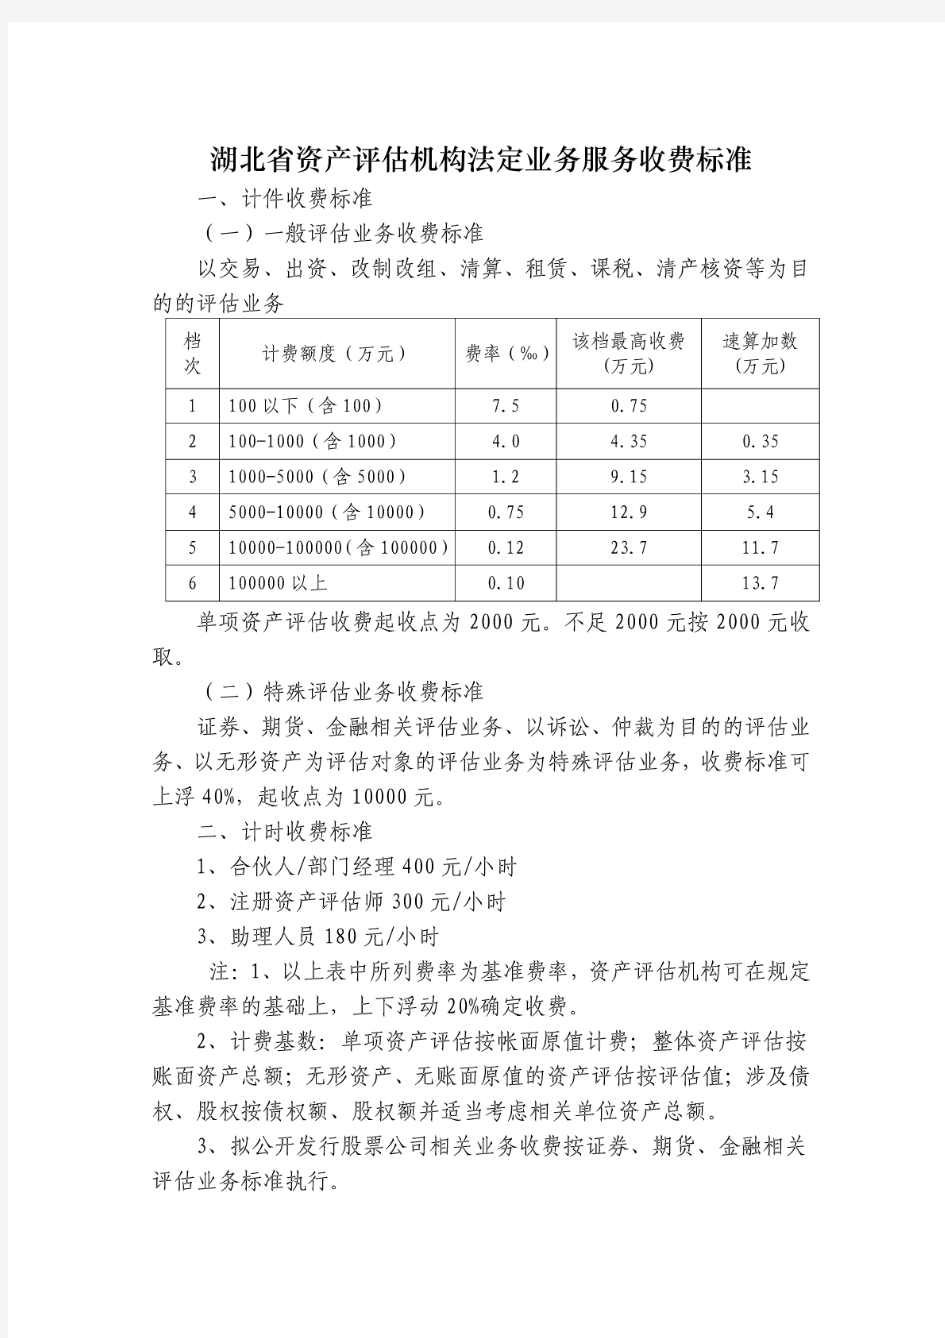 湖北省资产评估机构法定业务服务收费标准速算表